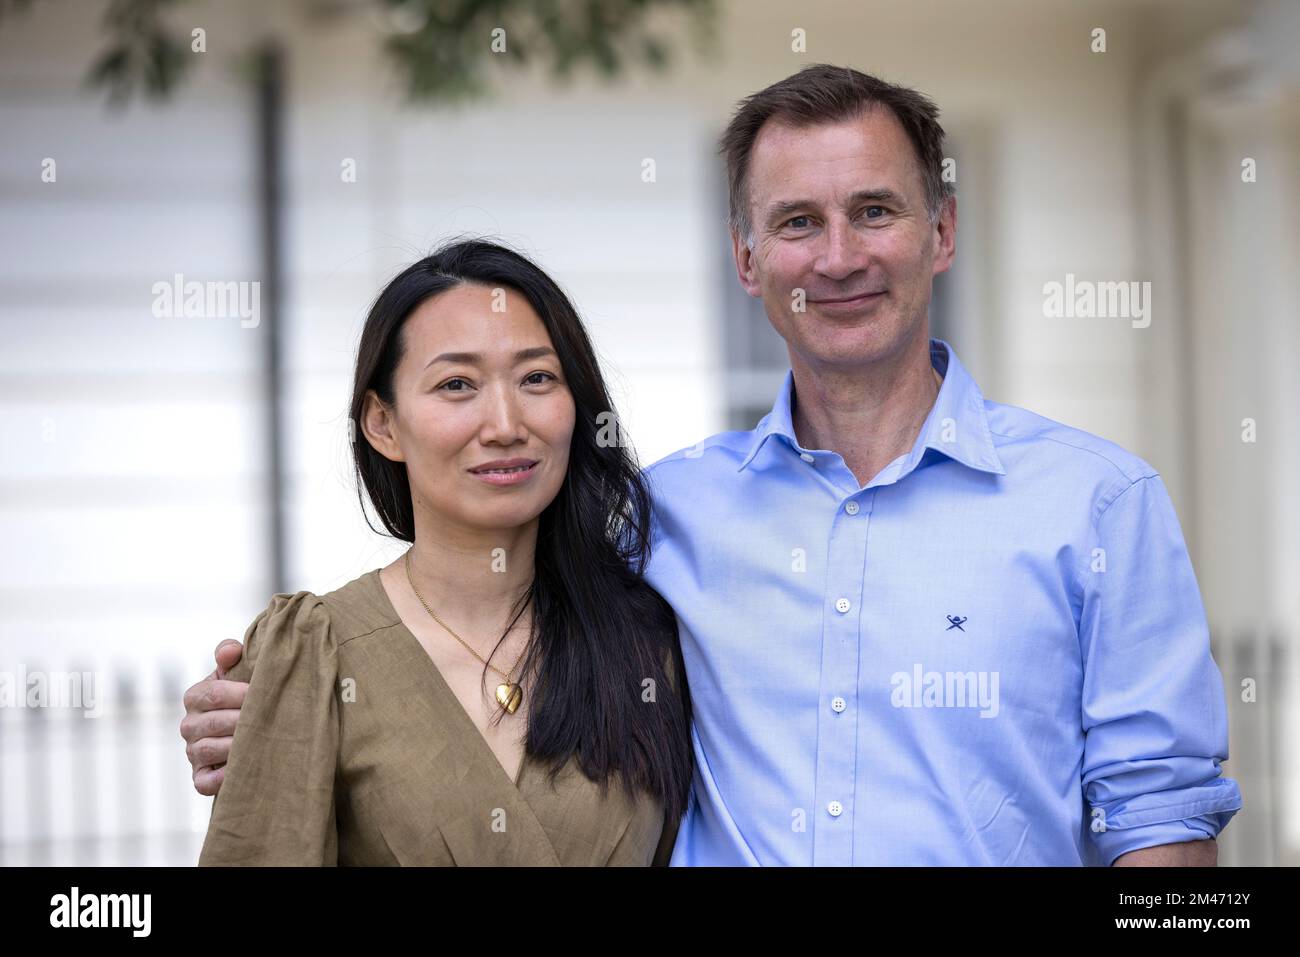 Jeremy Hunt, député conservateur et chancelier de l'Échiquier, avec sa femme née en Chine, Lucia Guo, Londres, Angleterre, Royaume-Uni Banque D'Images